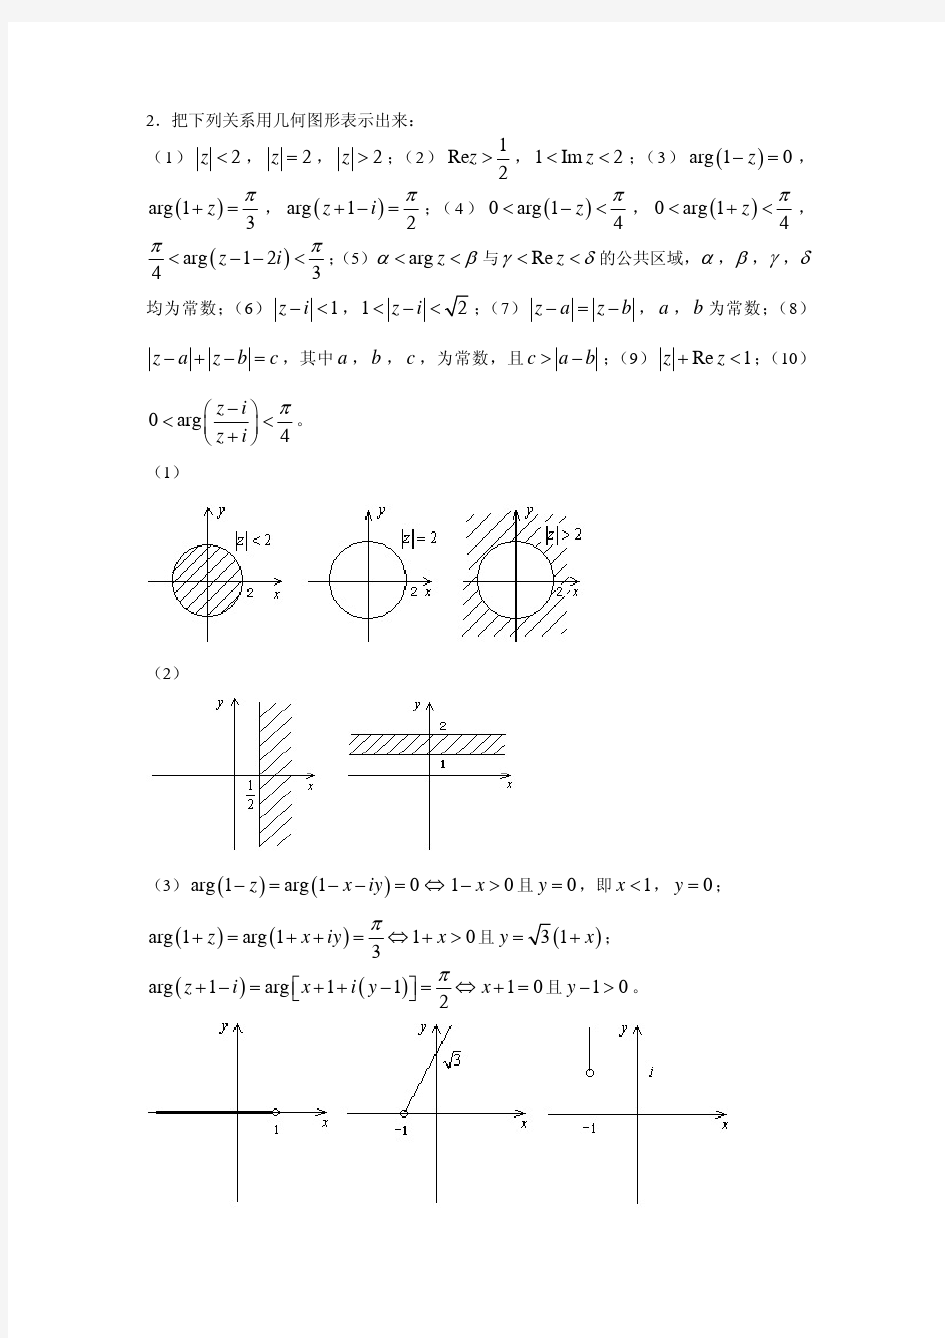 数学物理方法+吴崇试+习题解答